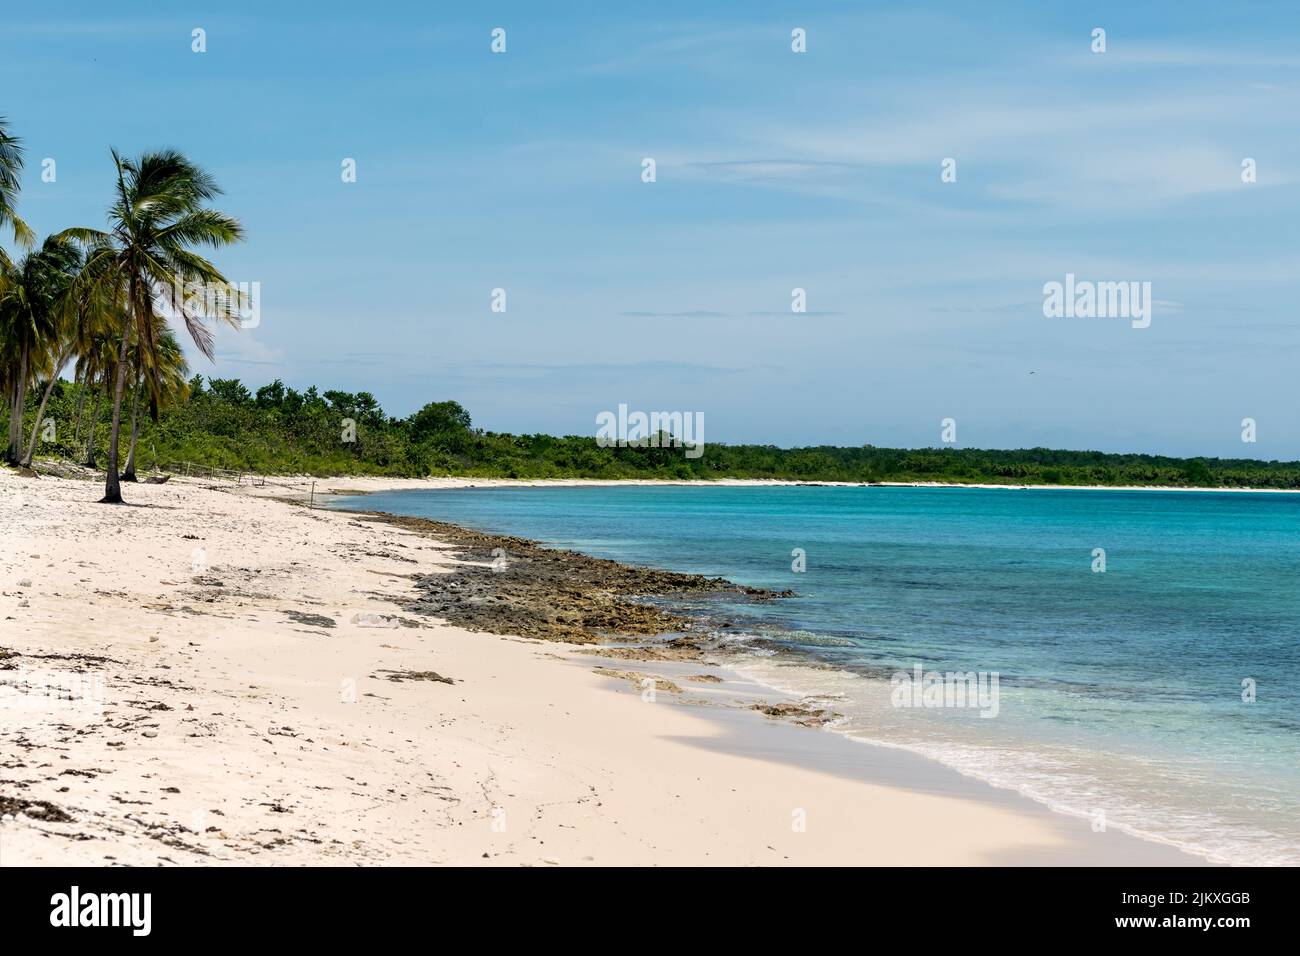 Foto eines kubanischen Strandes mit weißem Sand und etwas Lapiez am Ufer, das Meer ist ruhig und klar, es gibt einige tropische Vegetation in der Ferne Stockfoto